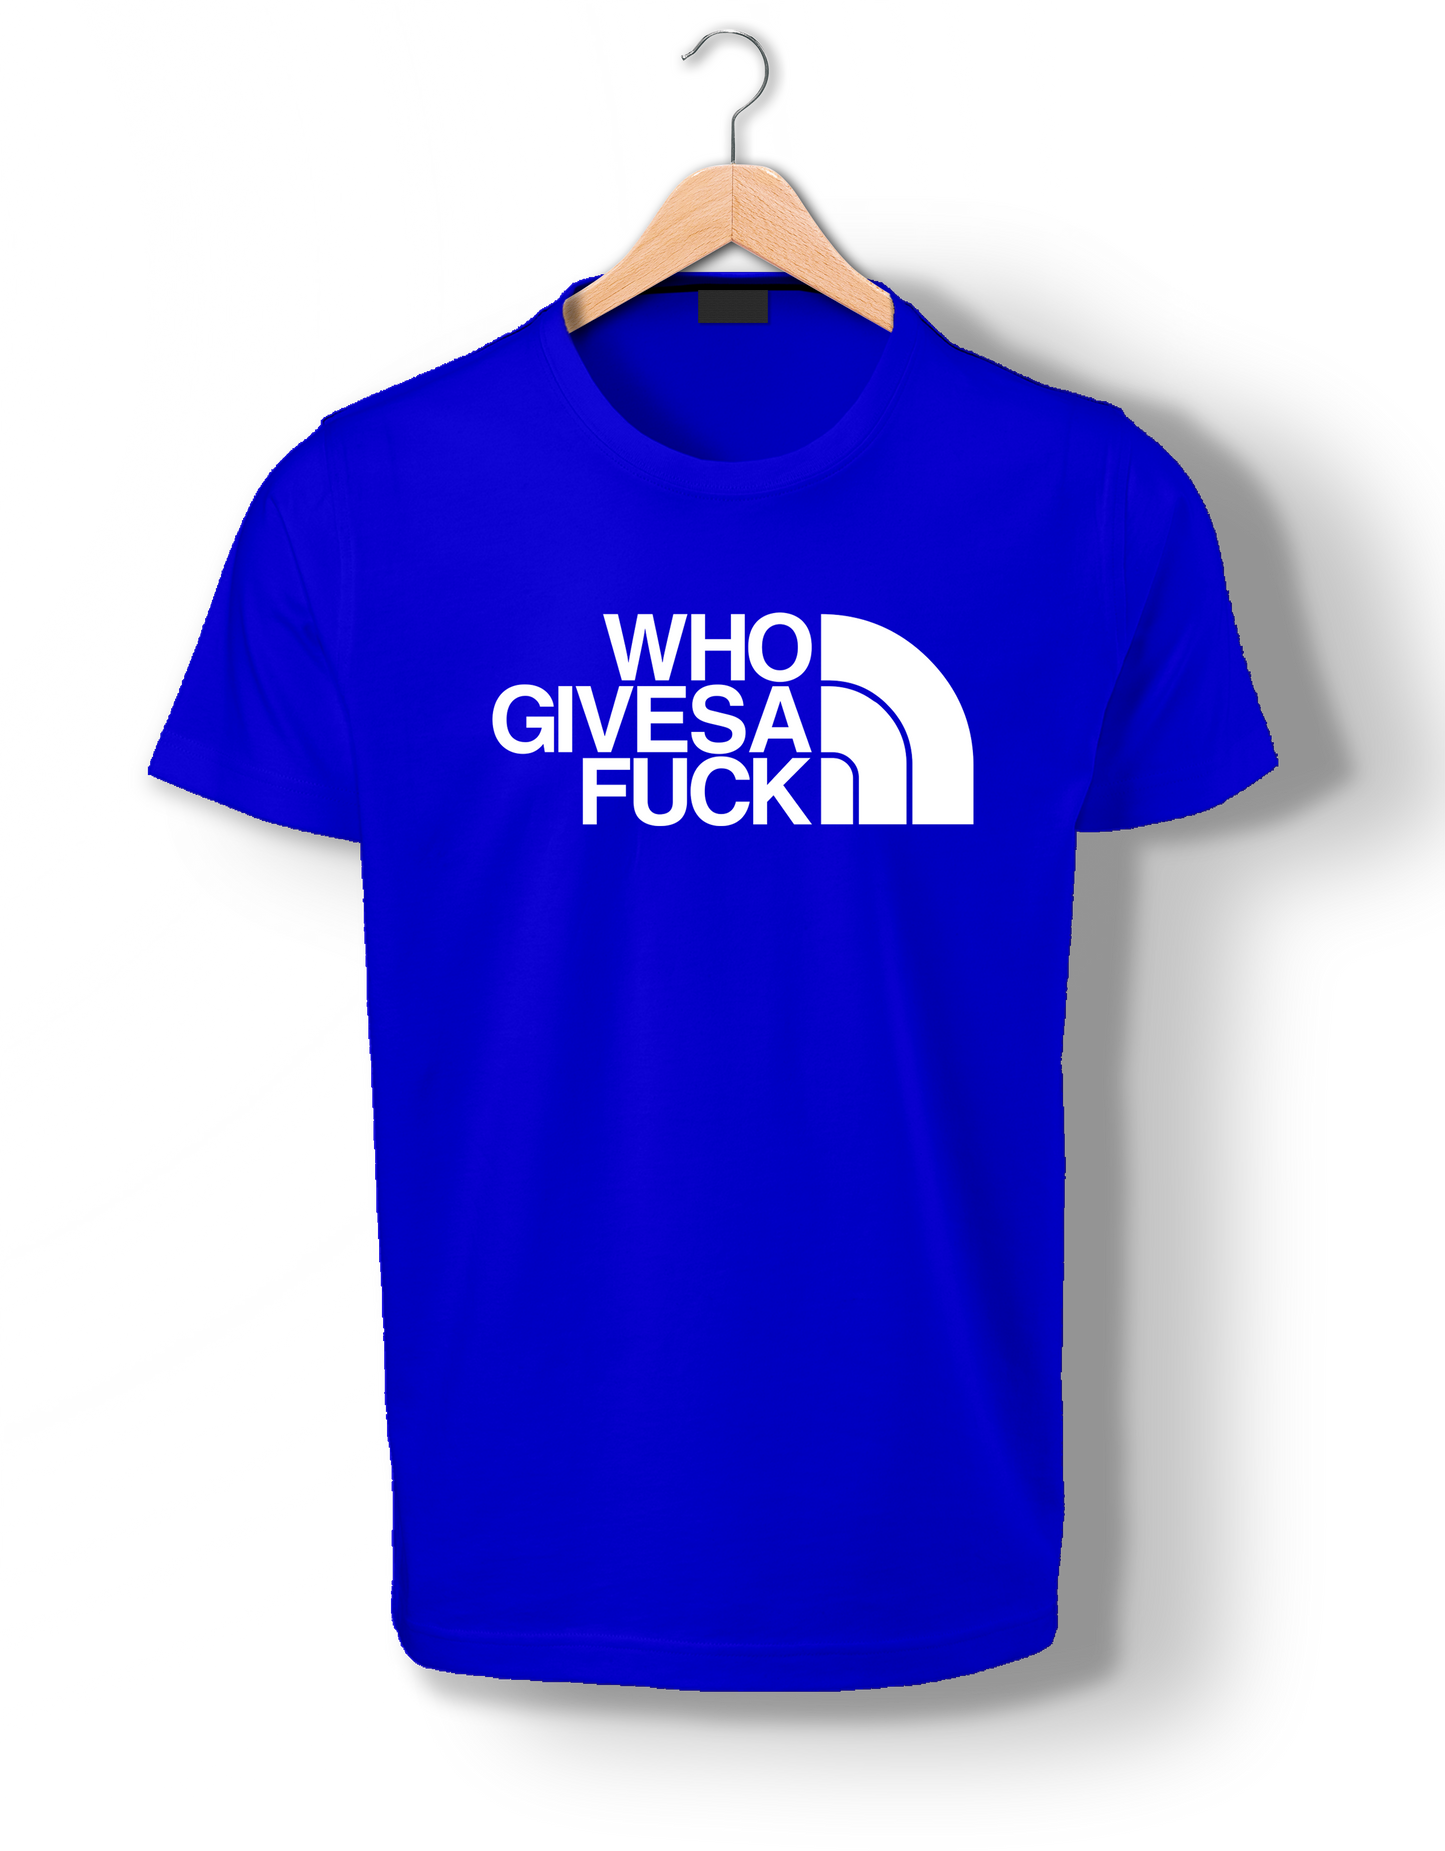 WHO GIVESA F@ck - T-Shirt